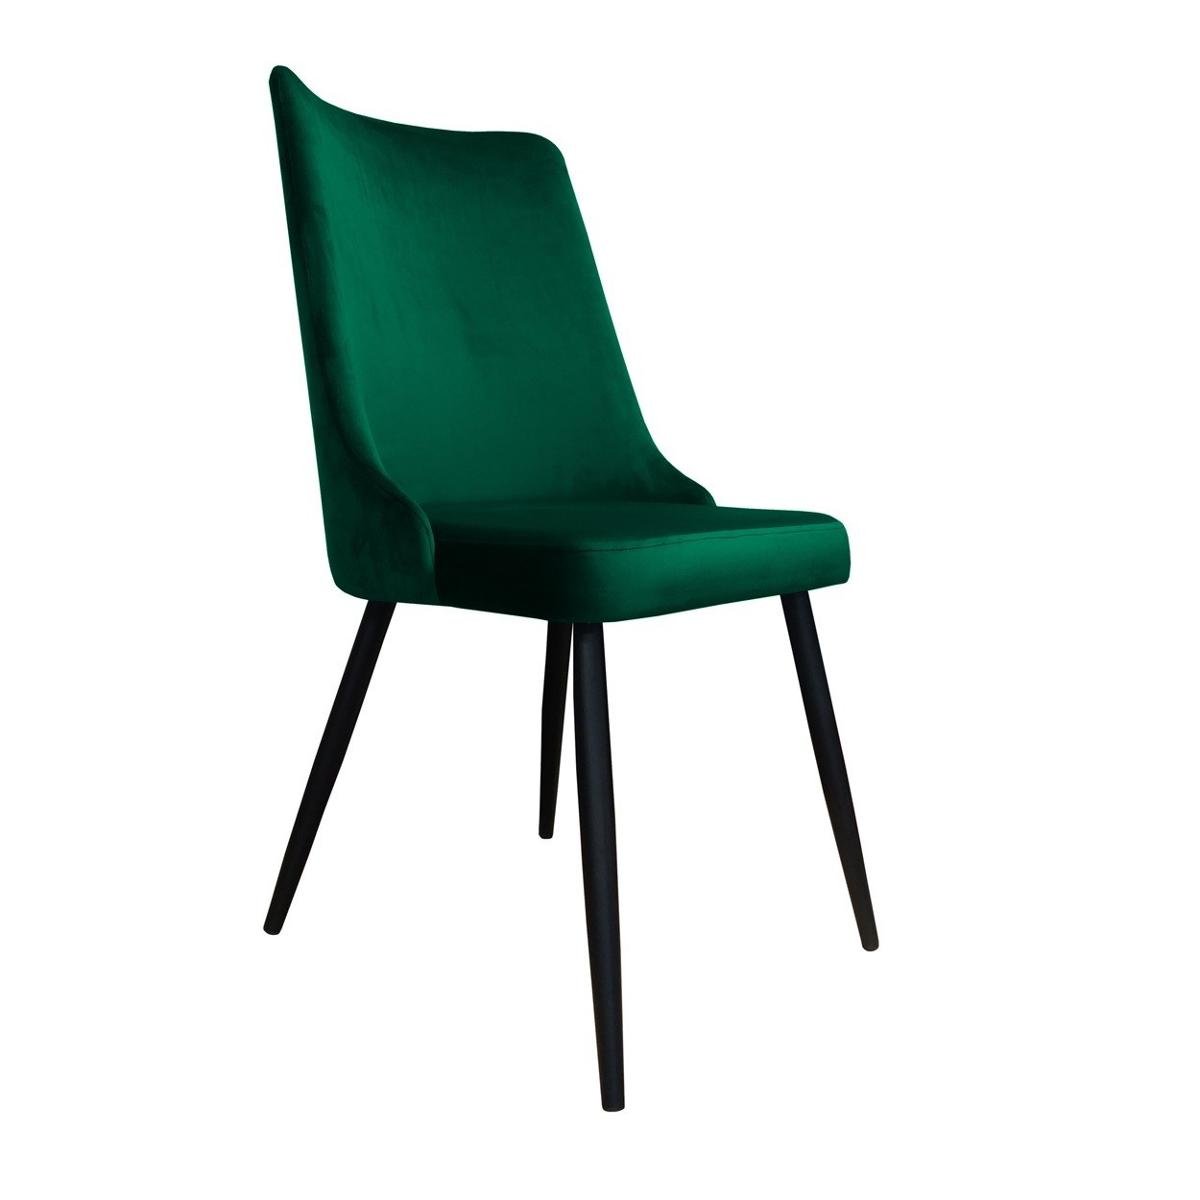 Zdjęcia - Krzesło Atos   Victor MG25, zielono-czarne, 96x50x50 cm 